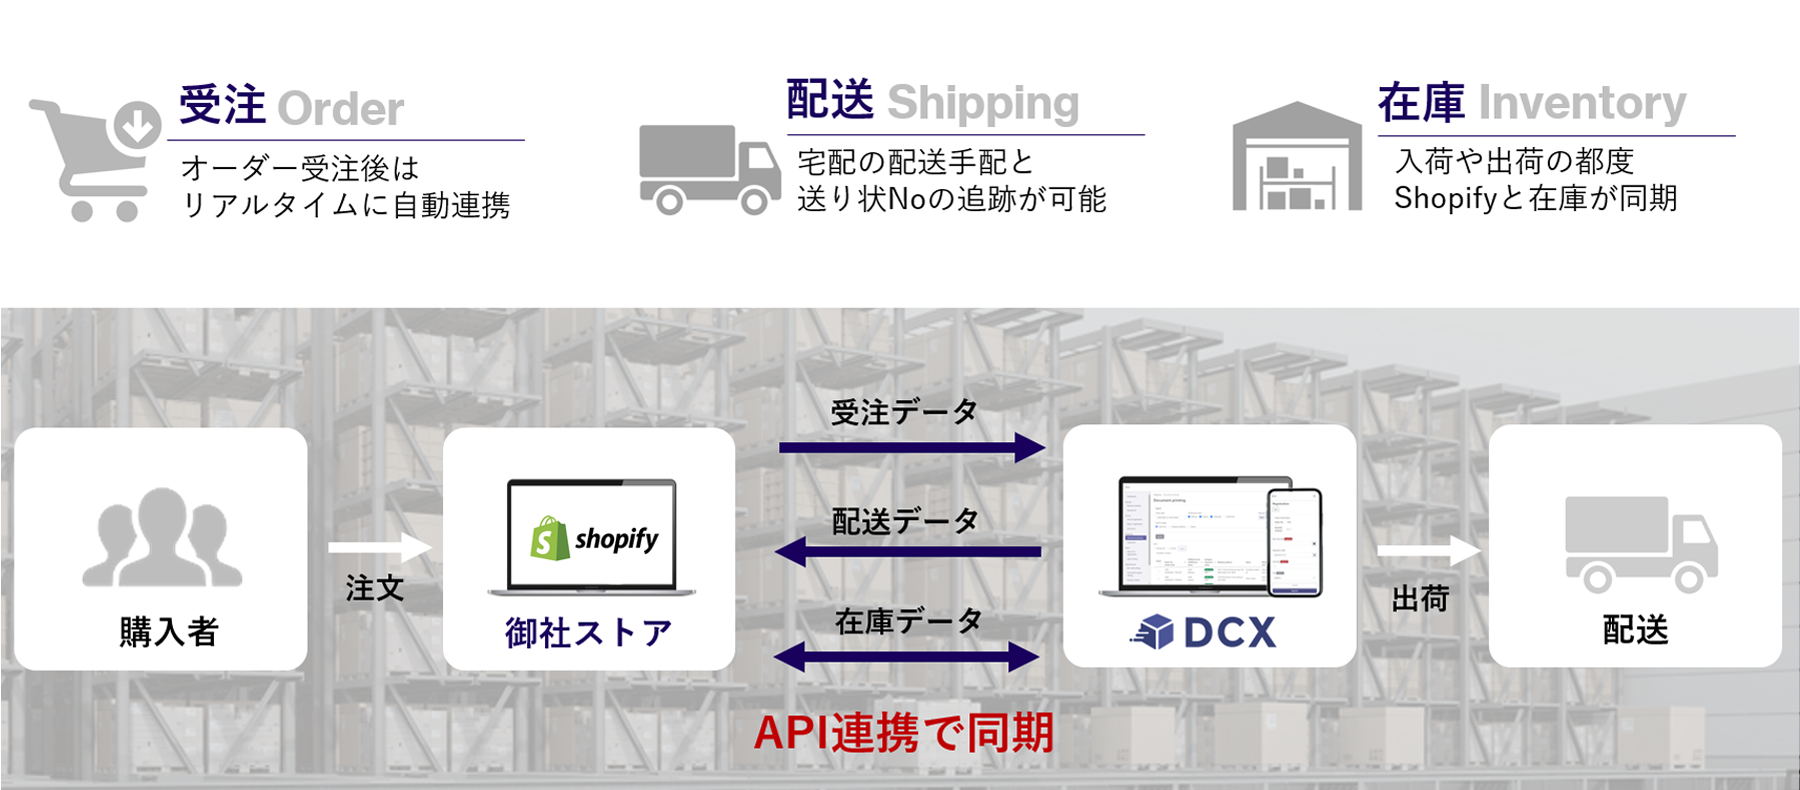 ShopfiyとDCXの連携イメージ